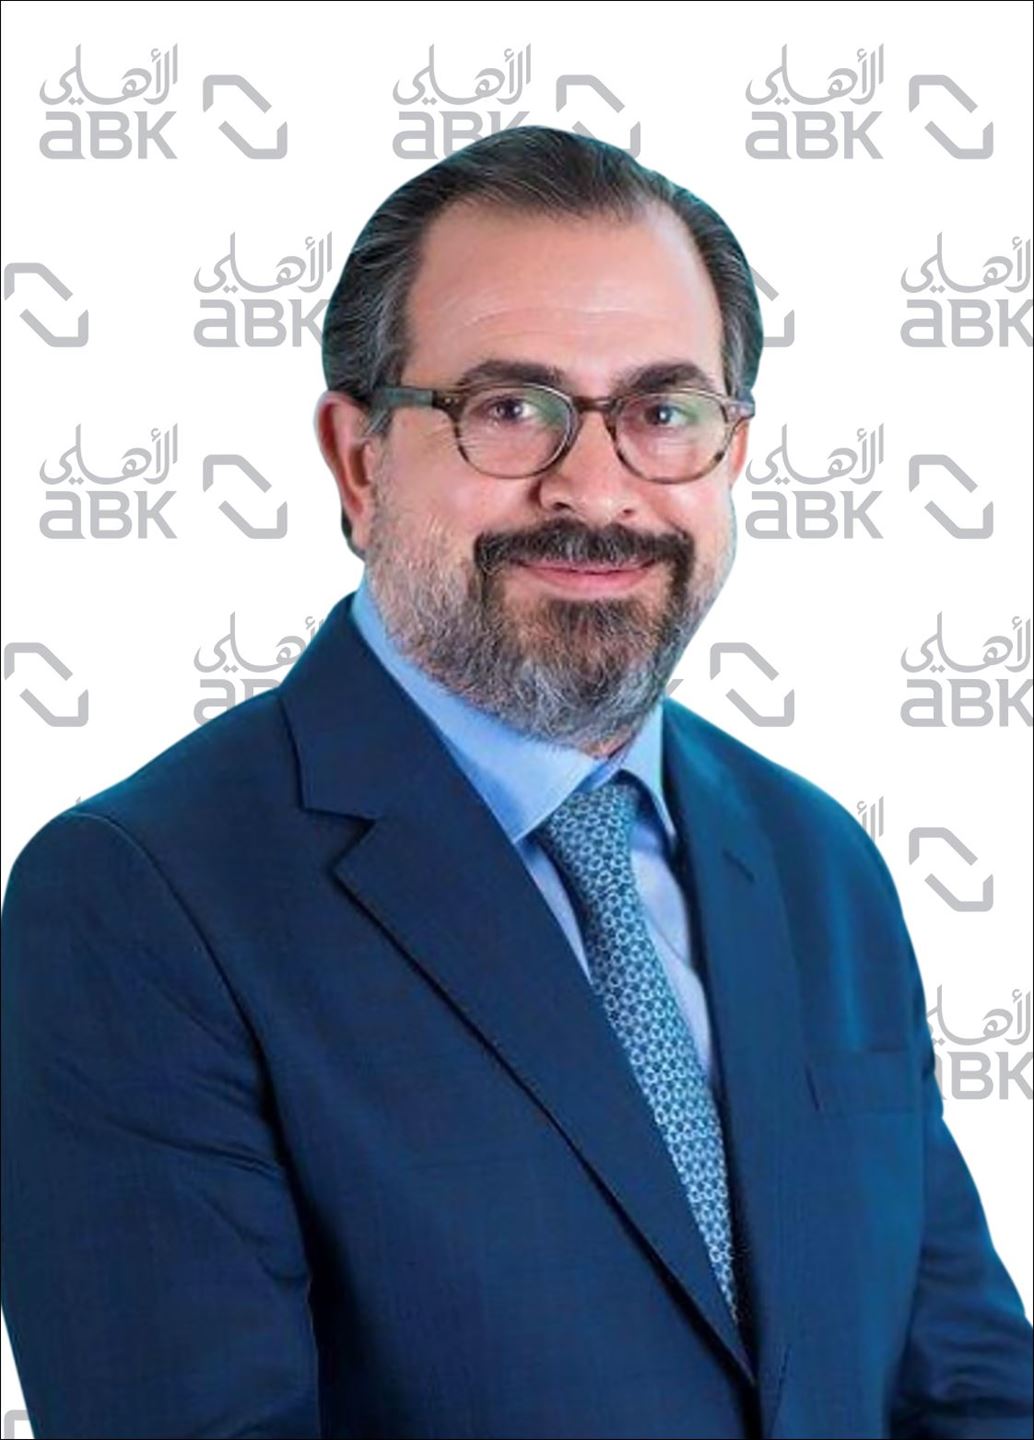 السيد رامي الرفاعي، المدير العام و المديرالتنفيذي الأول للبنك الأهلي الكويتي - مركز دبي المالي العالمي